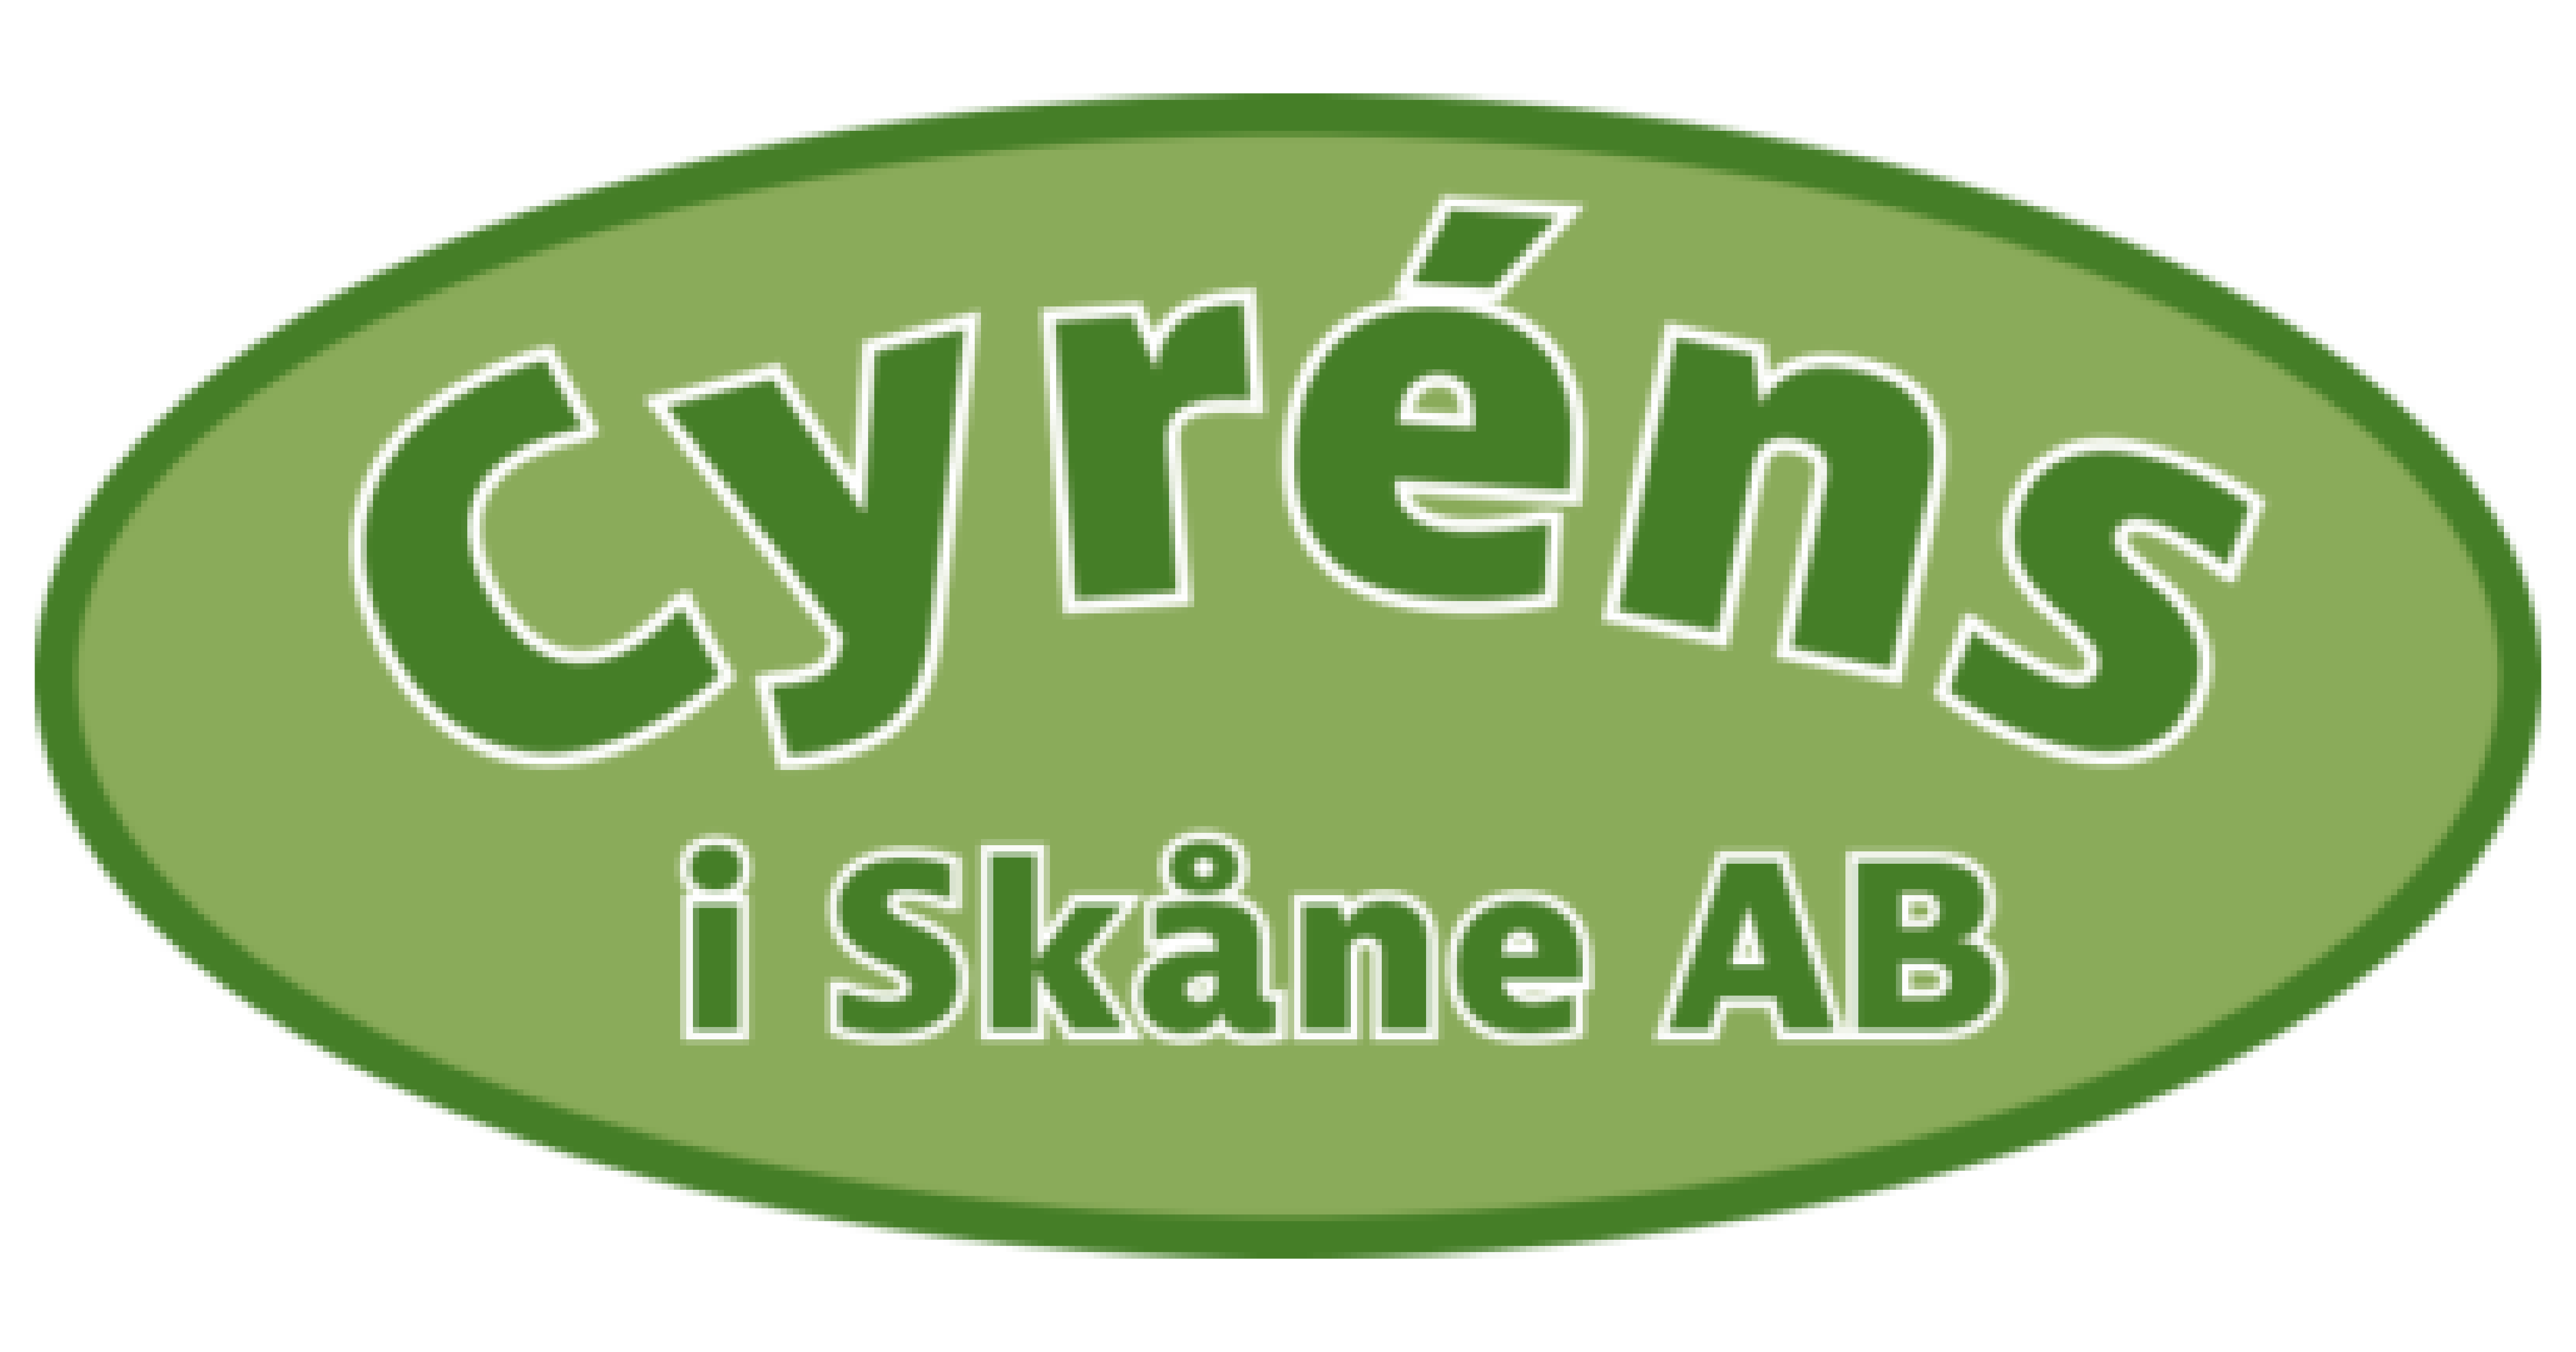 Cyréns i Skåne AB